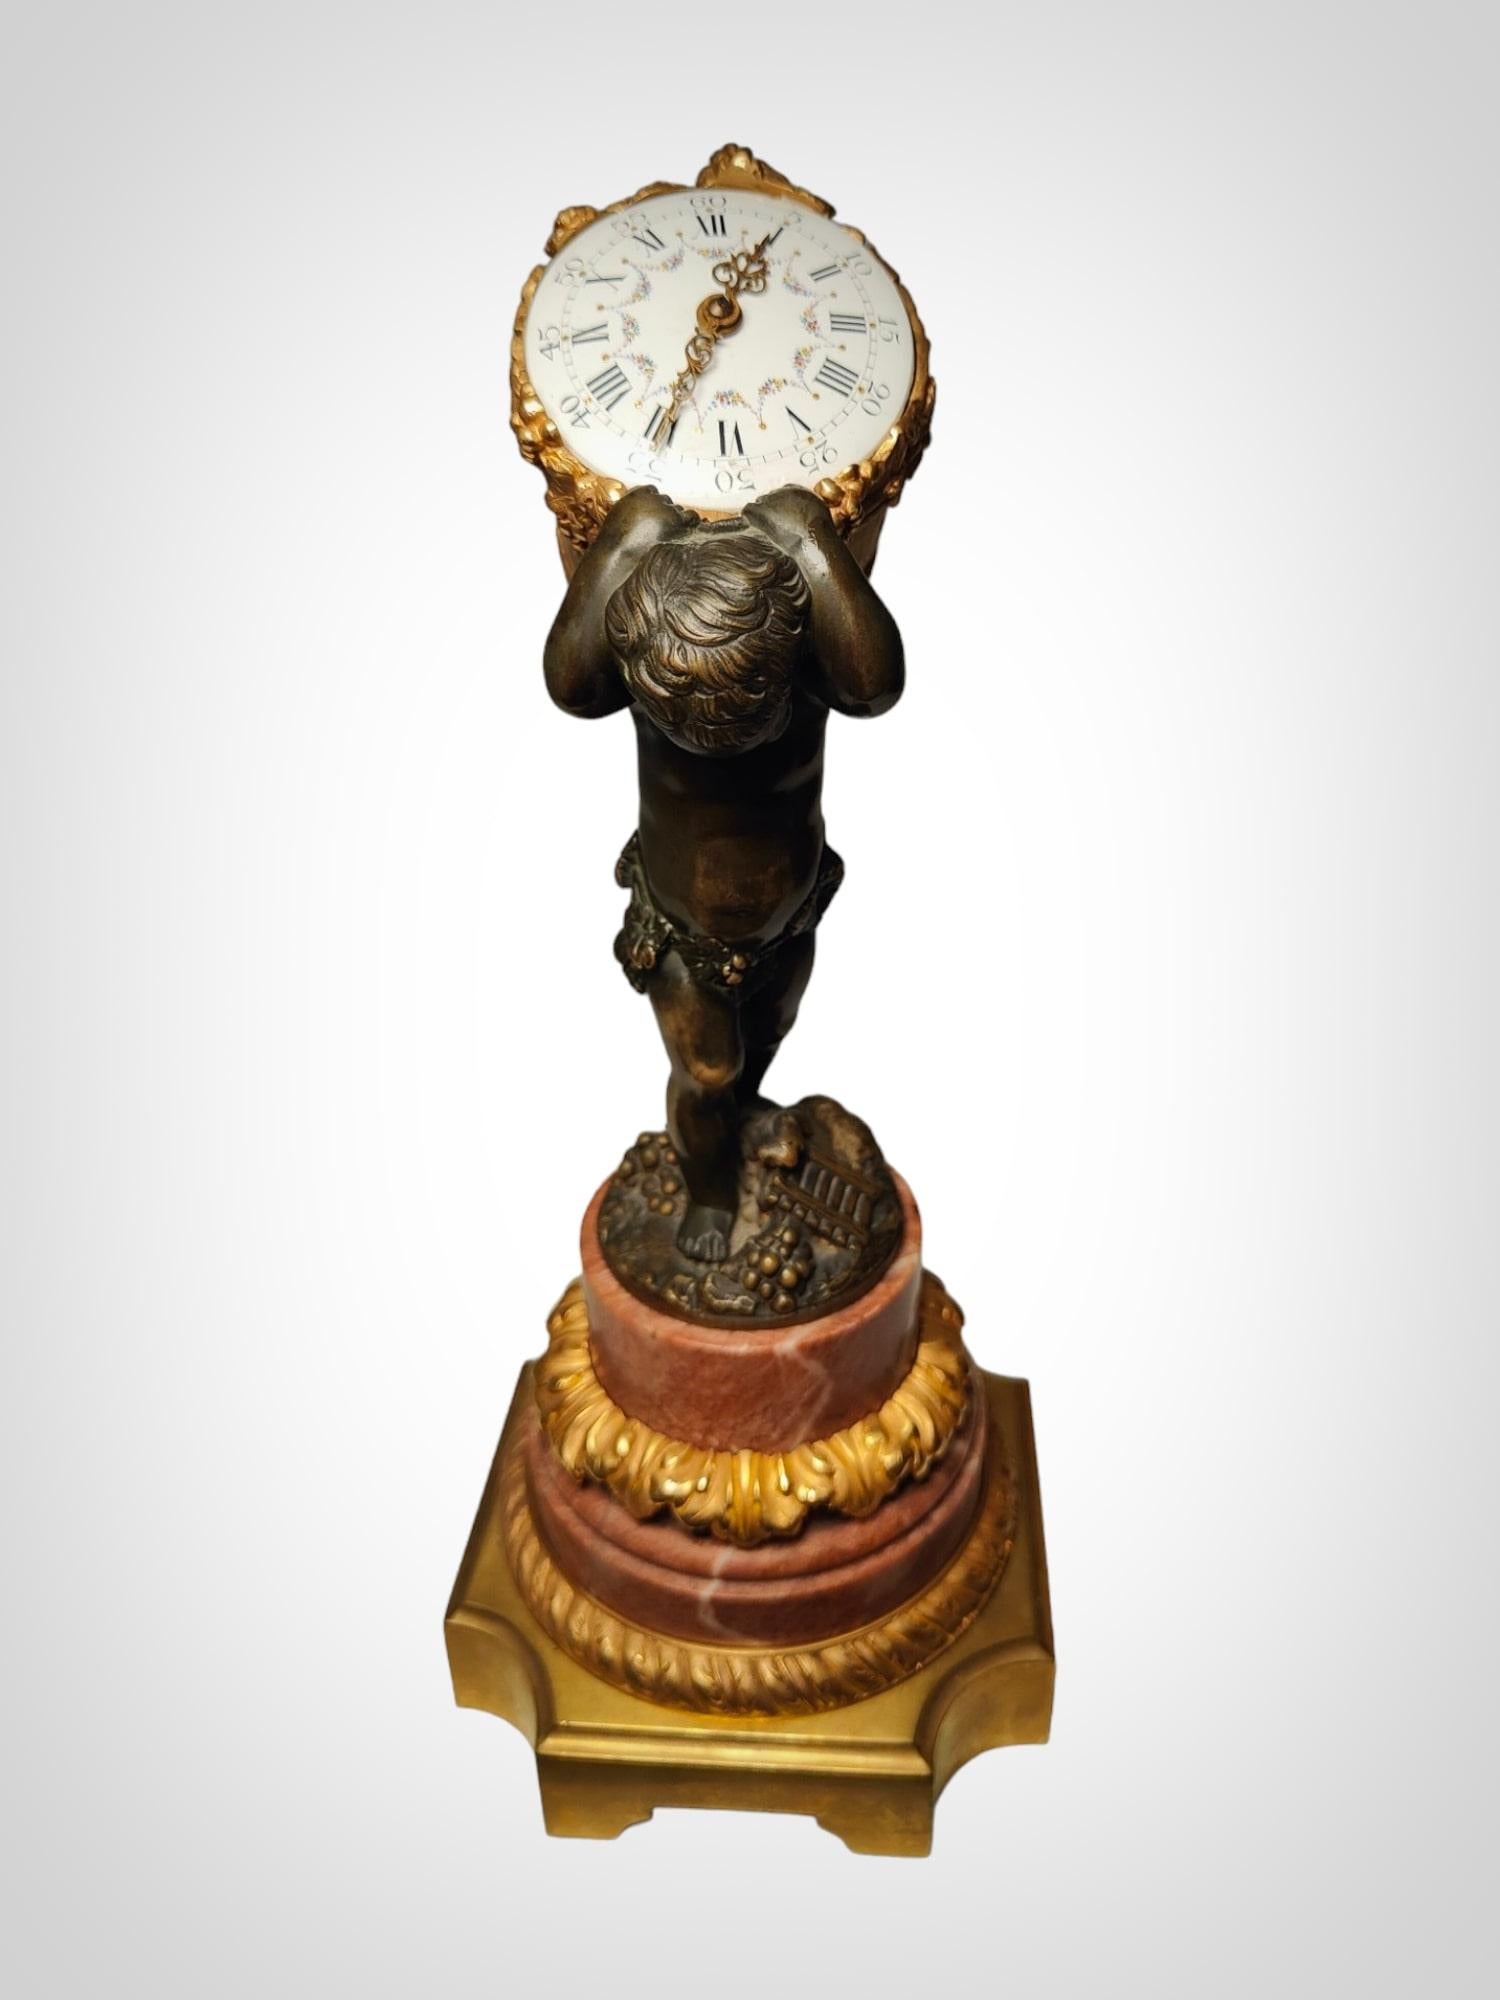 Versetzen Sie Ihren Raum in das 19. Jahrhundert mit dieser eleganten französischen Bronzeuhr, die mit Vergoldung und Patina verziert ist und einen Cherub, ein Sinnbild der Ernte, darstellt. Diese Uhr ist ein Meisterwerk in Sachen Design und